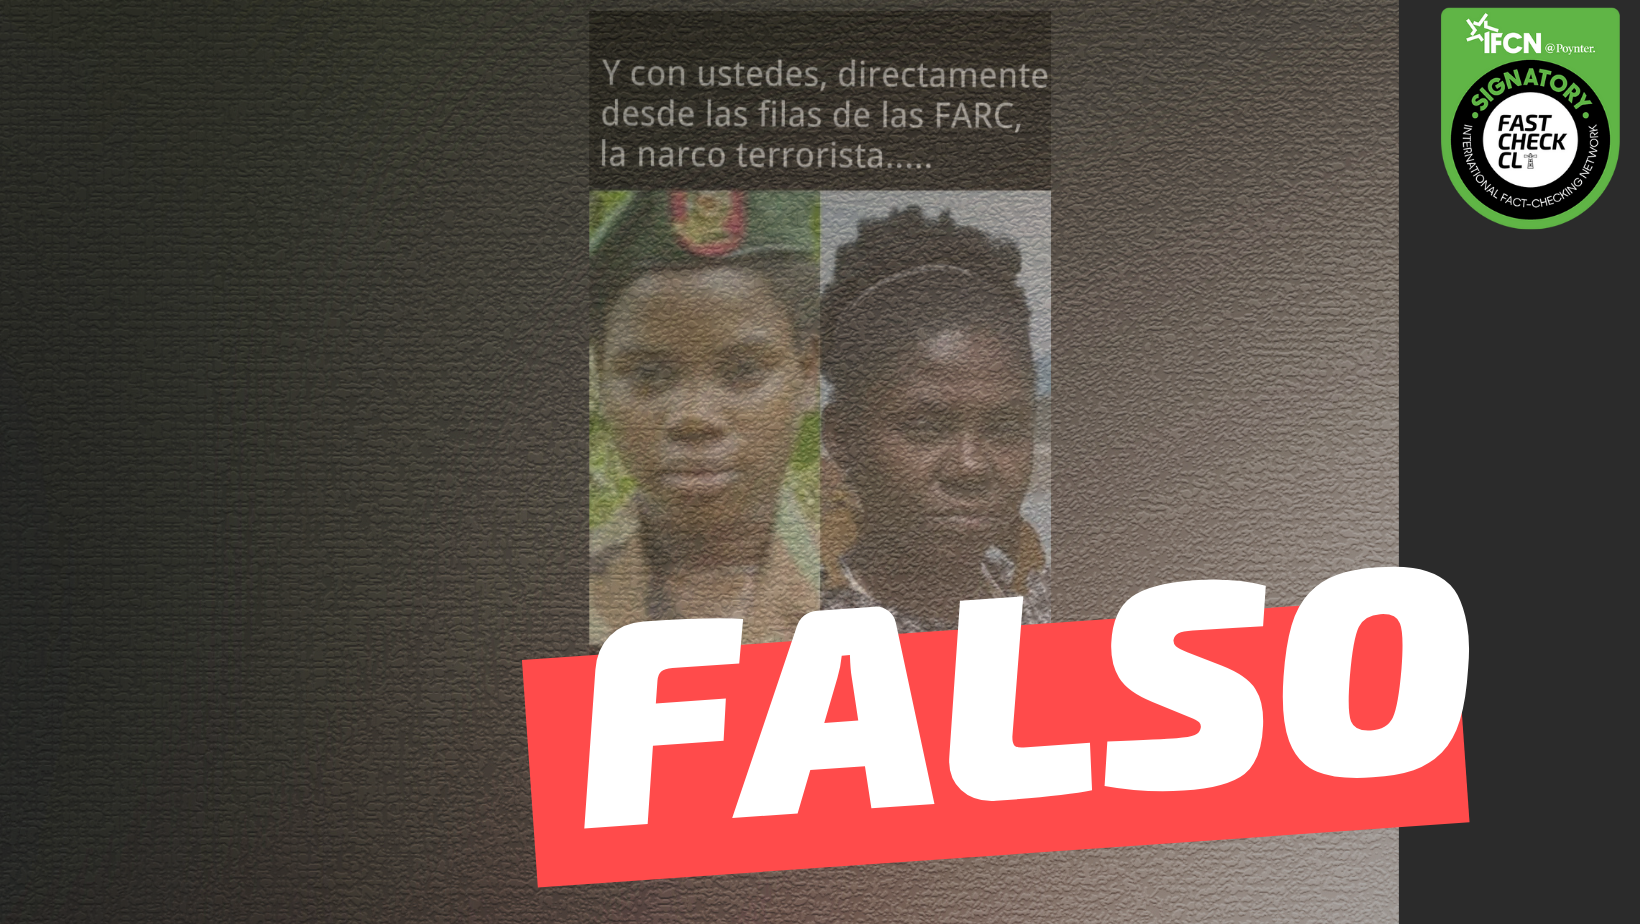 Read more about the article (Imagen) “Y con ustedes, directamente desde las filas de la FARC, la narco terrorista Francia Márquez”: #Falso